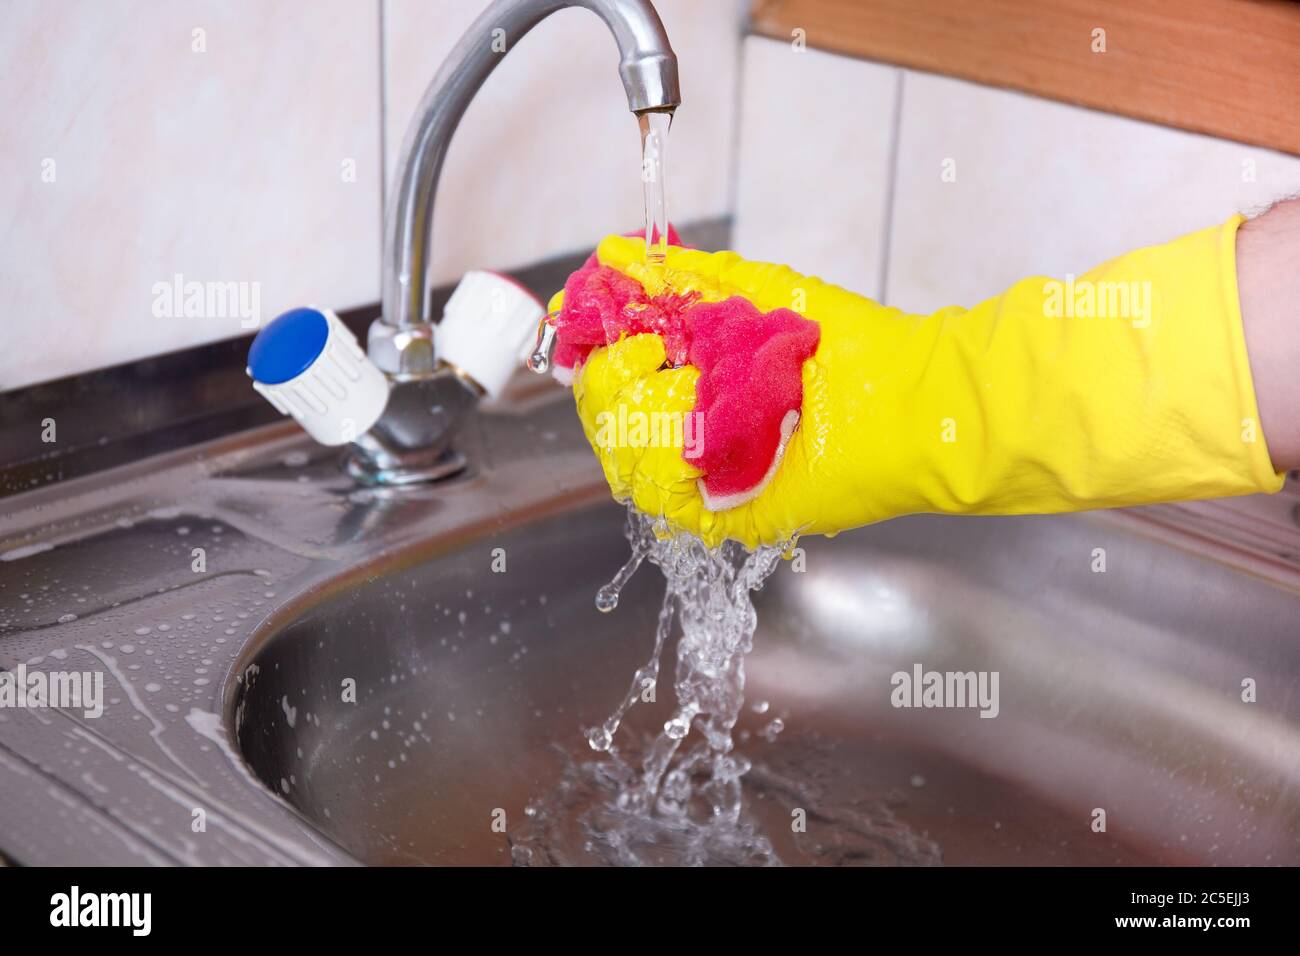 Hände in gelben Handschuhen reinigen Waschbecken mit Schwamm und einem  speziellen Reinigungsmittel, Waschmittelspray. Hygiene in der Küche,  Reinigung der Küche, Haushalt Stockfotografie - Alamy